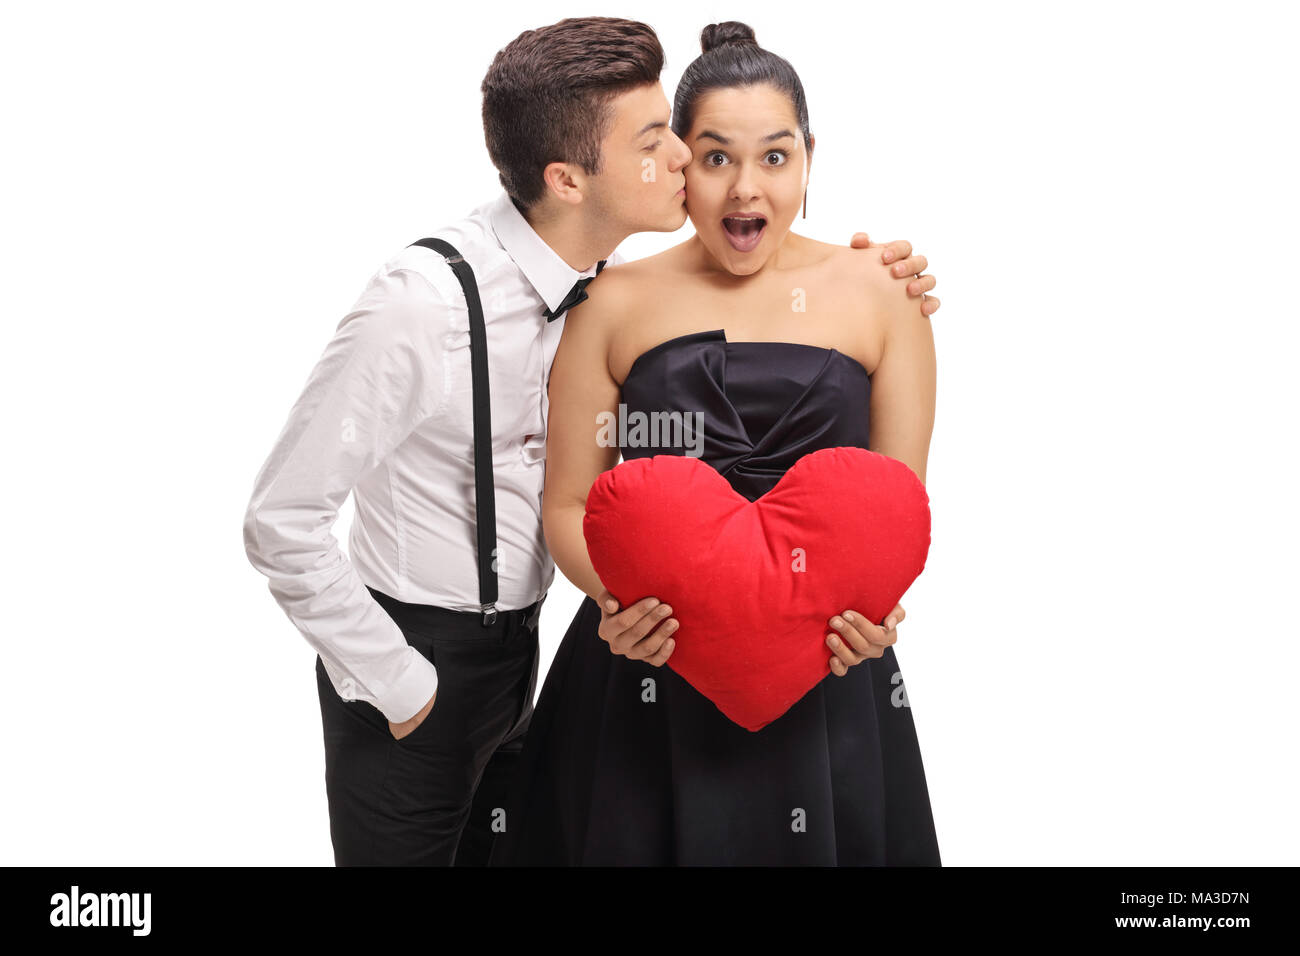 Elegantemente vestito ragazzo adolescente baciando la sua ragazza isolato su sfondo bianco Foto Stock